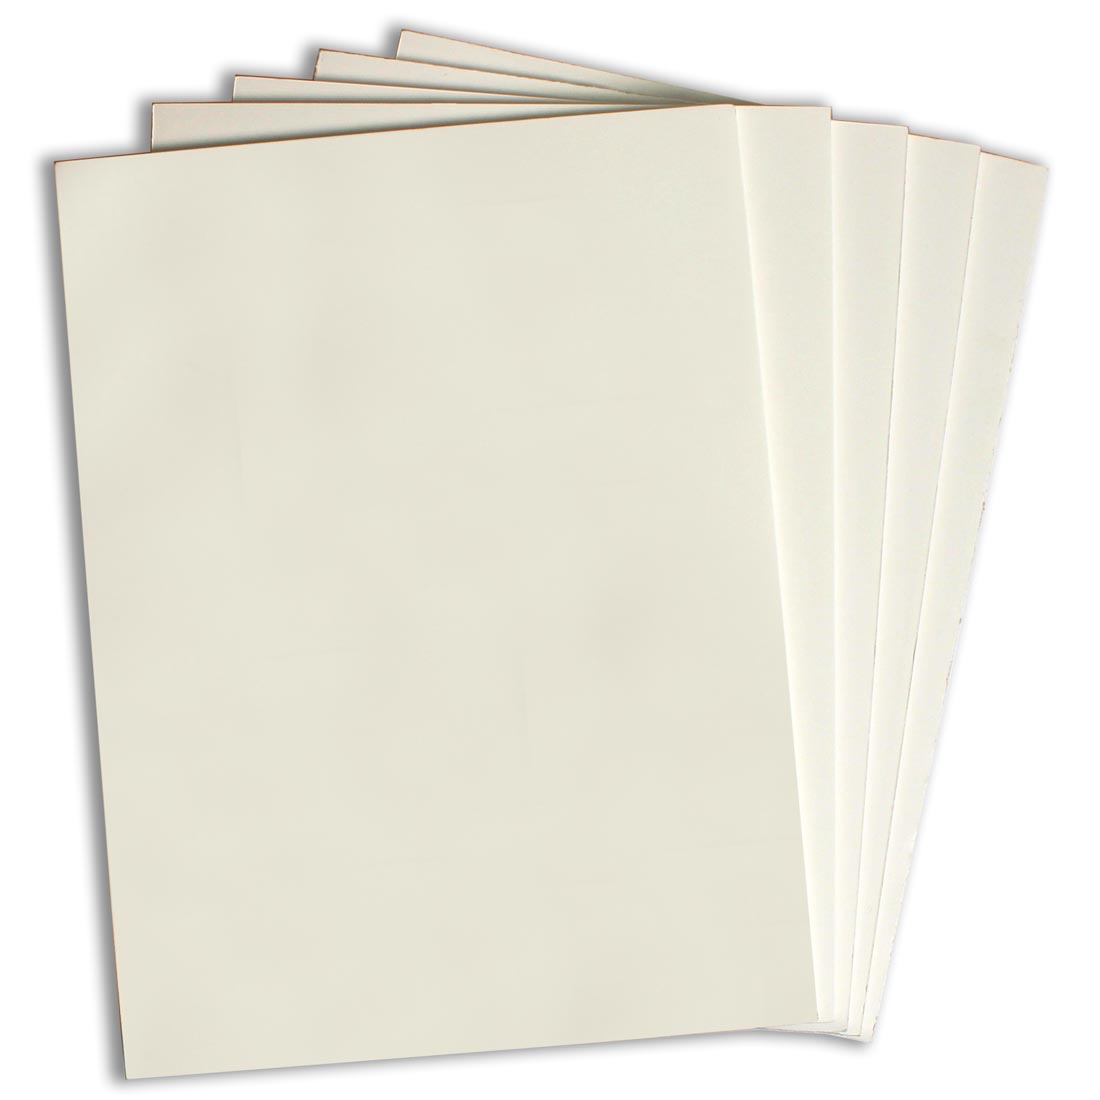 5 sheets of Flipside 9x12" White Foam Board